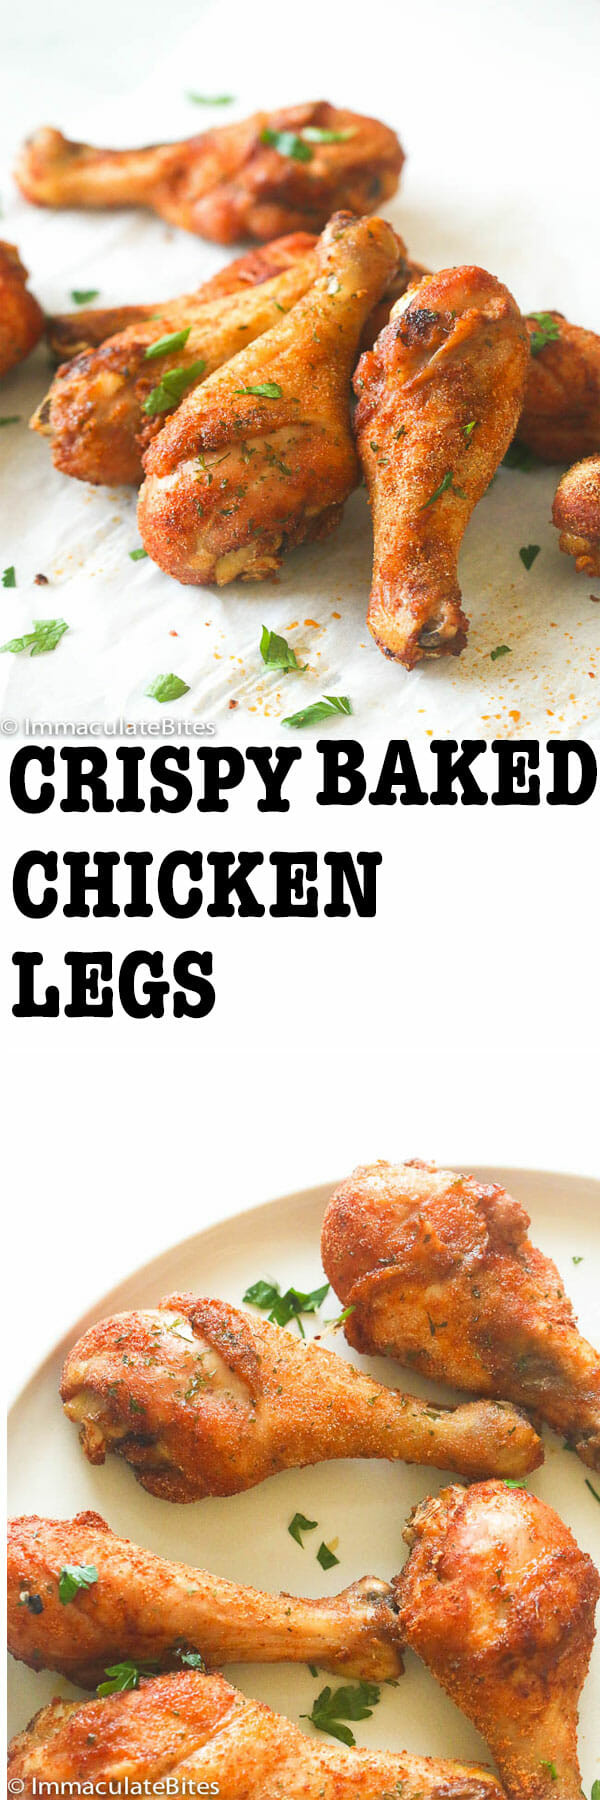 What Temp To Bake Chicken Thighs
 temperature bake chicken drumsticks